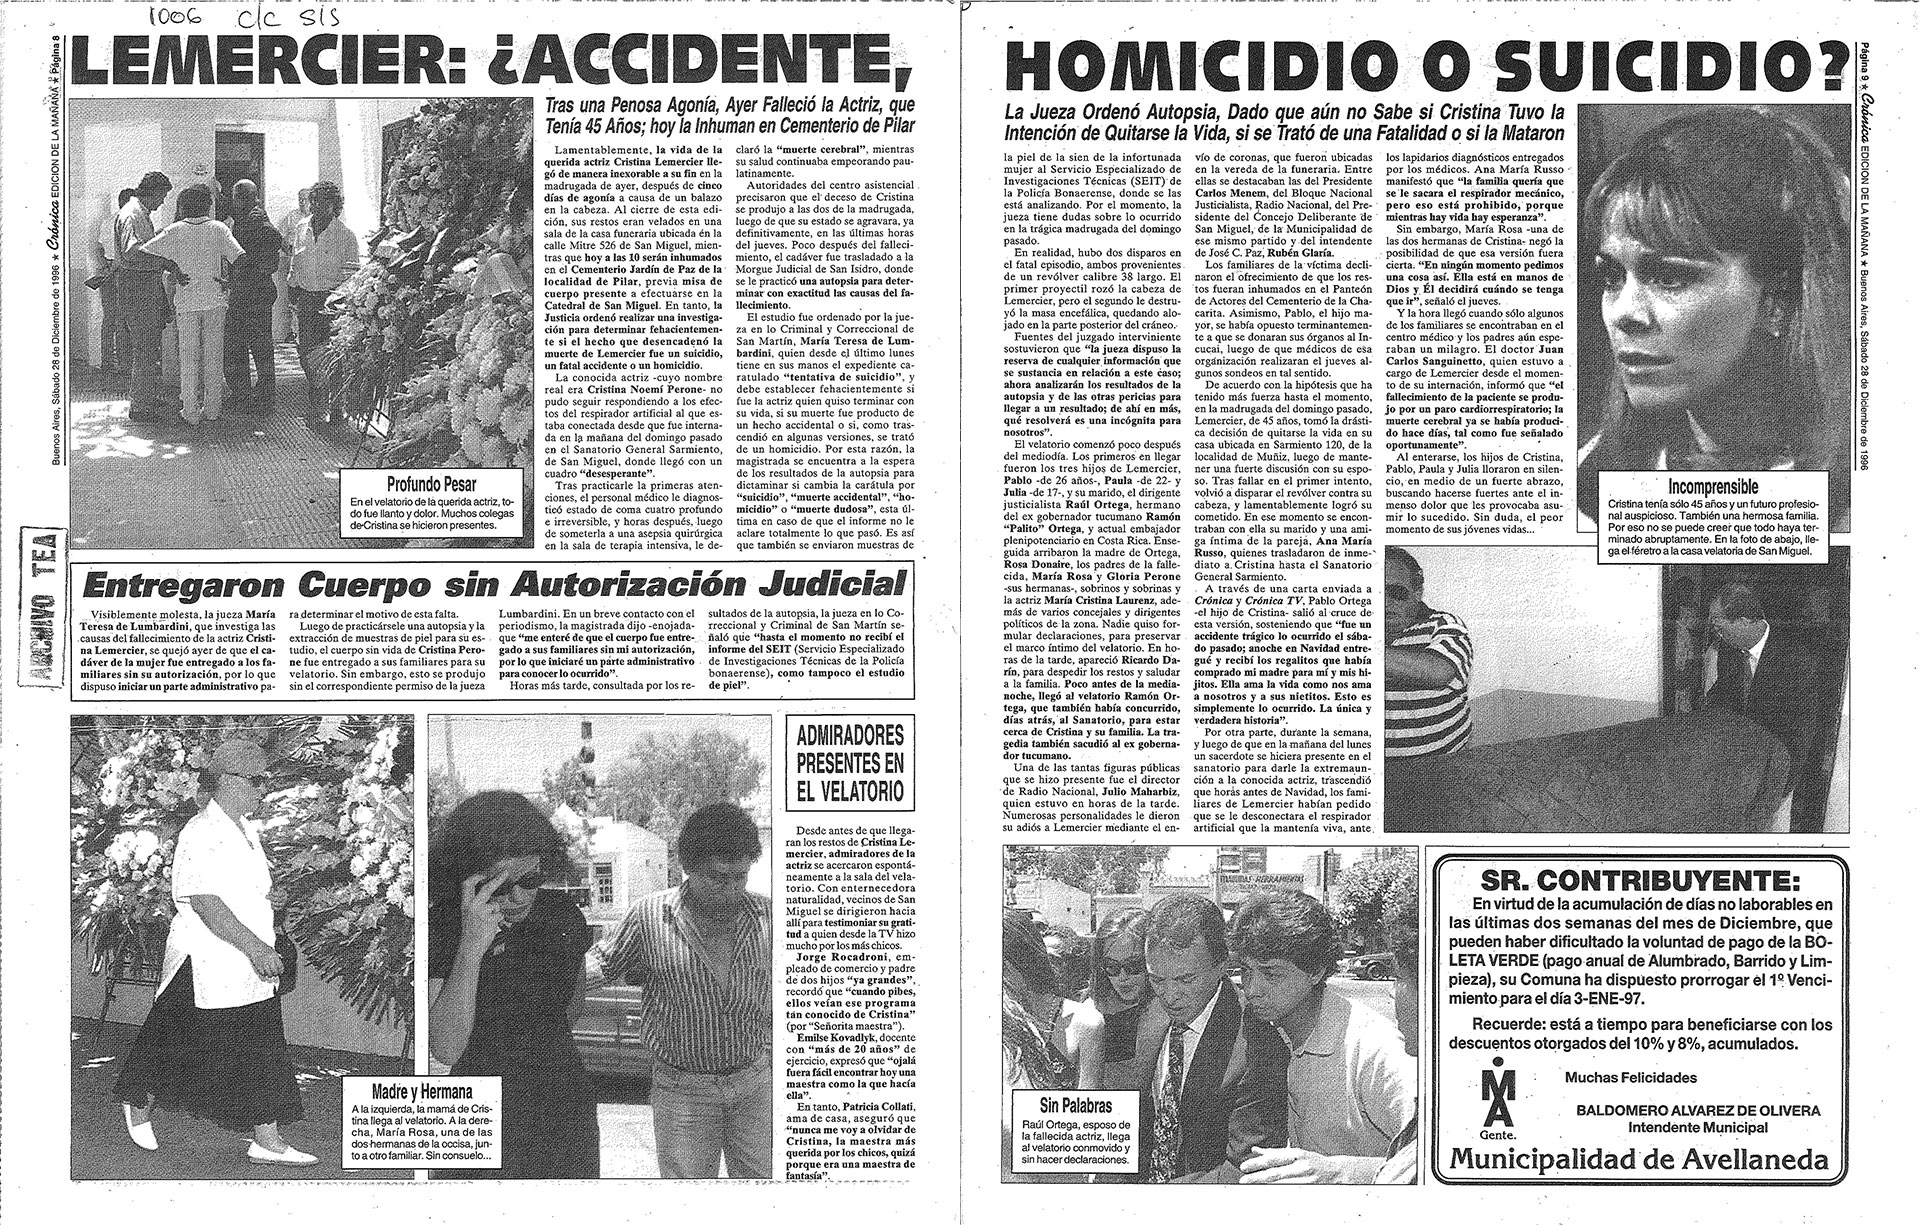 Los diarios dudaban de la causa de la muerte de Cristina Lemercier (Imagen: Crónica / Archivo TEA)